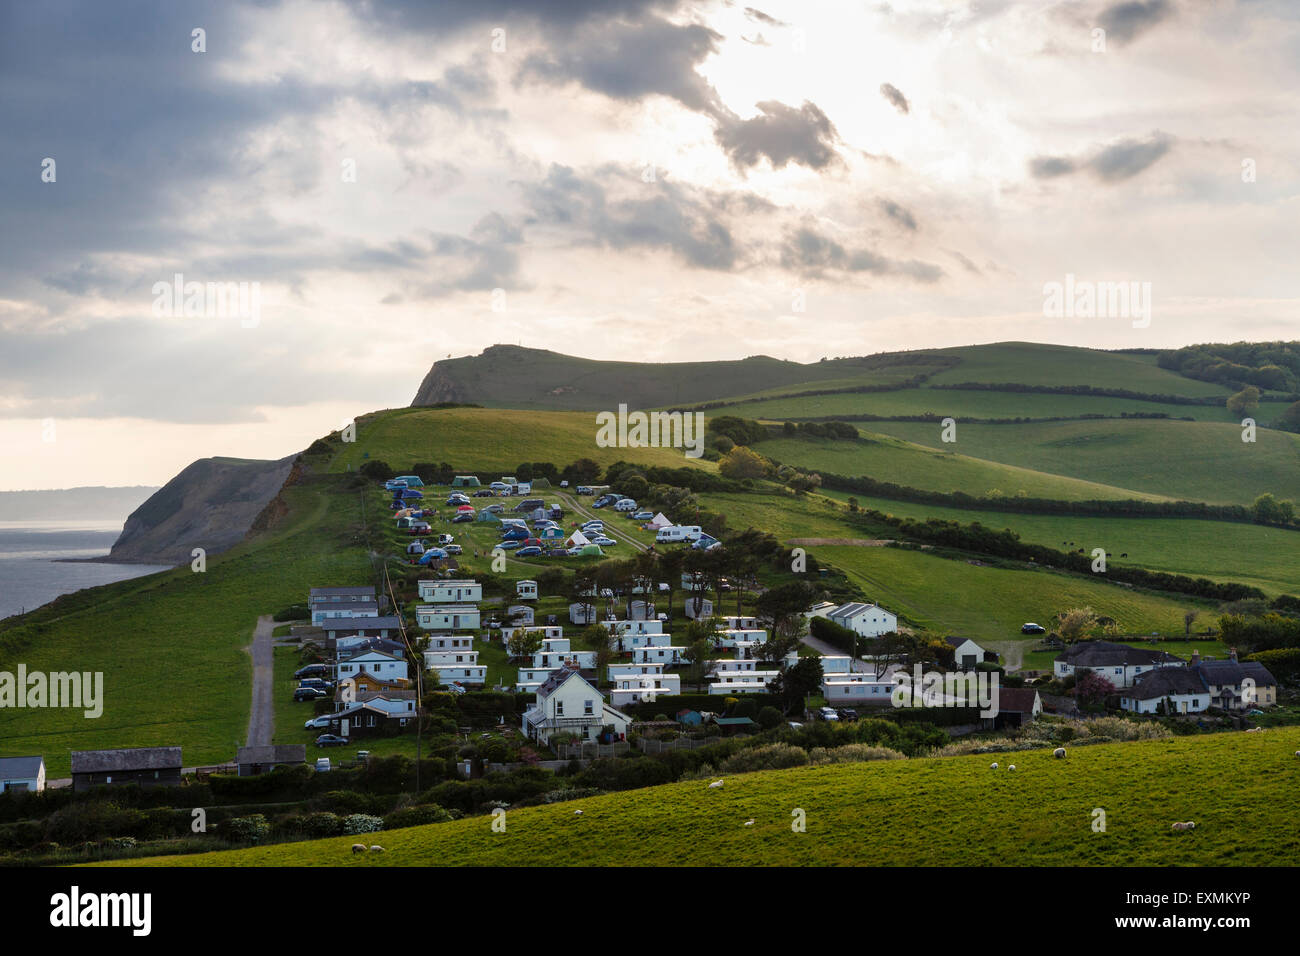 Campingplatz in der schönen Landschaft am Eype an der Jurassic Coast, Dorset. Stockfoto